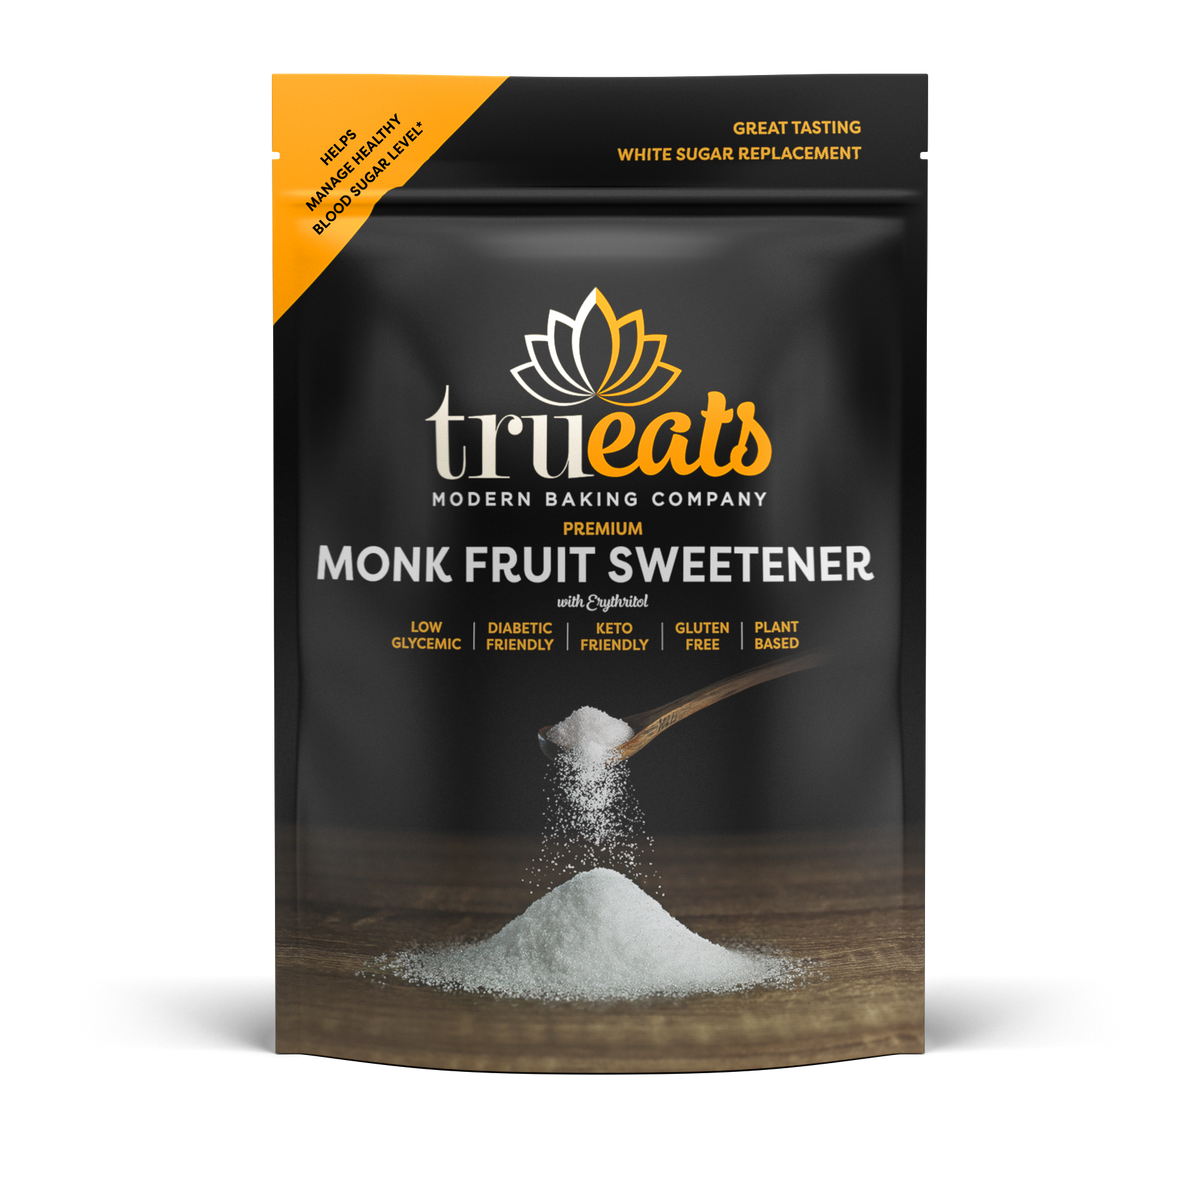 TruEats Premium Monk Fruit Sweetener